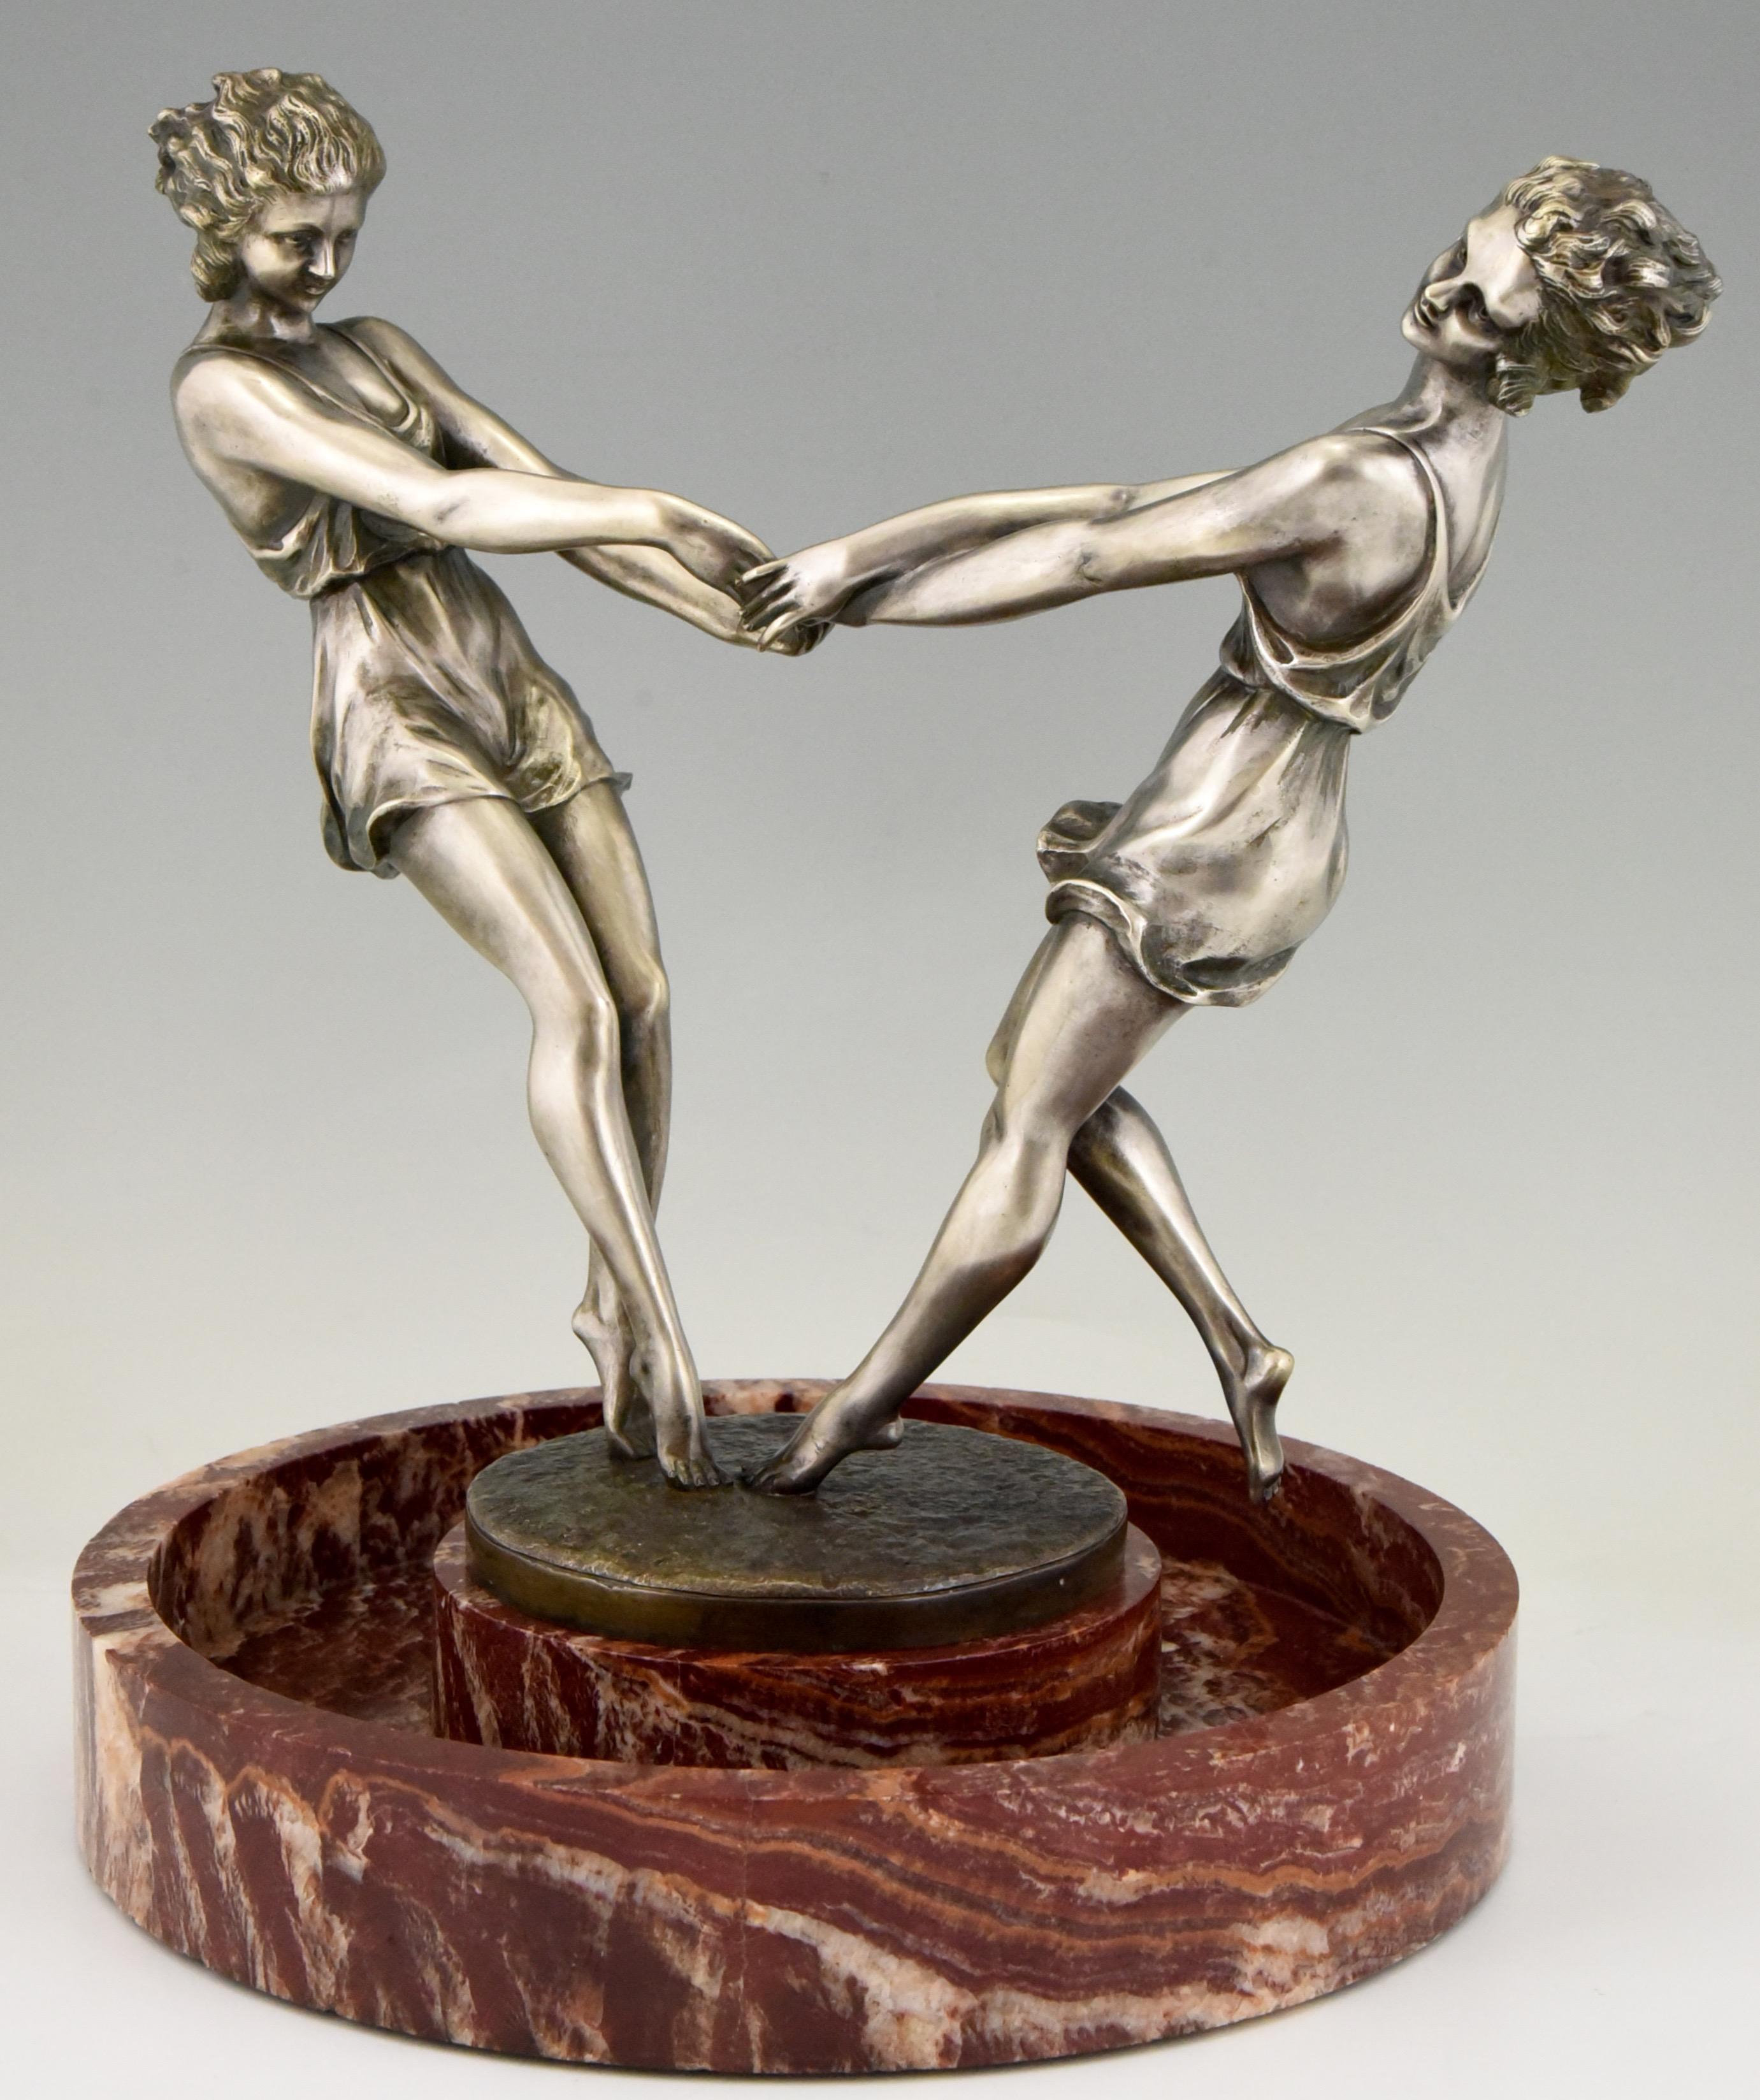 Wirbelnder, spektakulärer runder Marmoraufsatz mit einer Bronzeskulptur von zwei tanzenden Mädchen, die sich an den Händen halten, von dem französischen Künstler Andre Gilbert, um 1925.
Die Bronze hat eine silberne Patina.

Dieses Modell ist auf